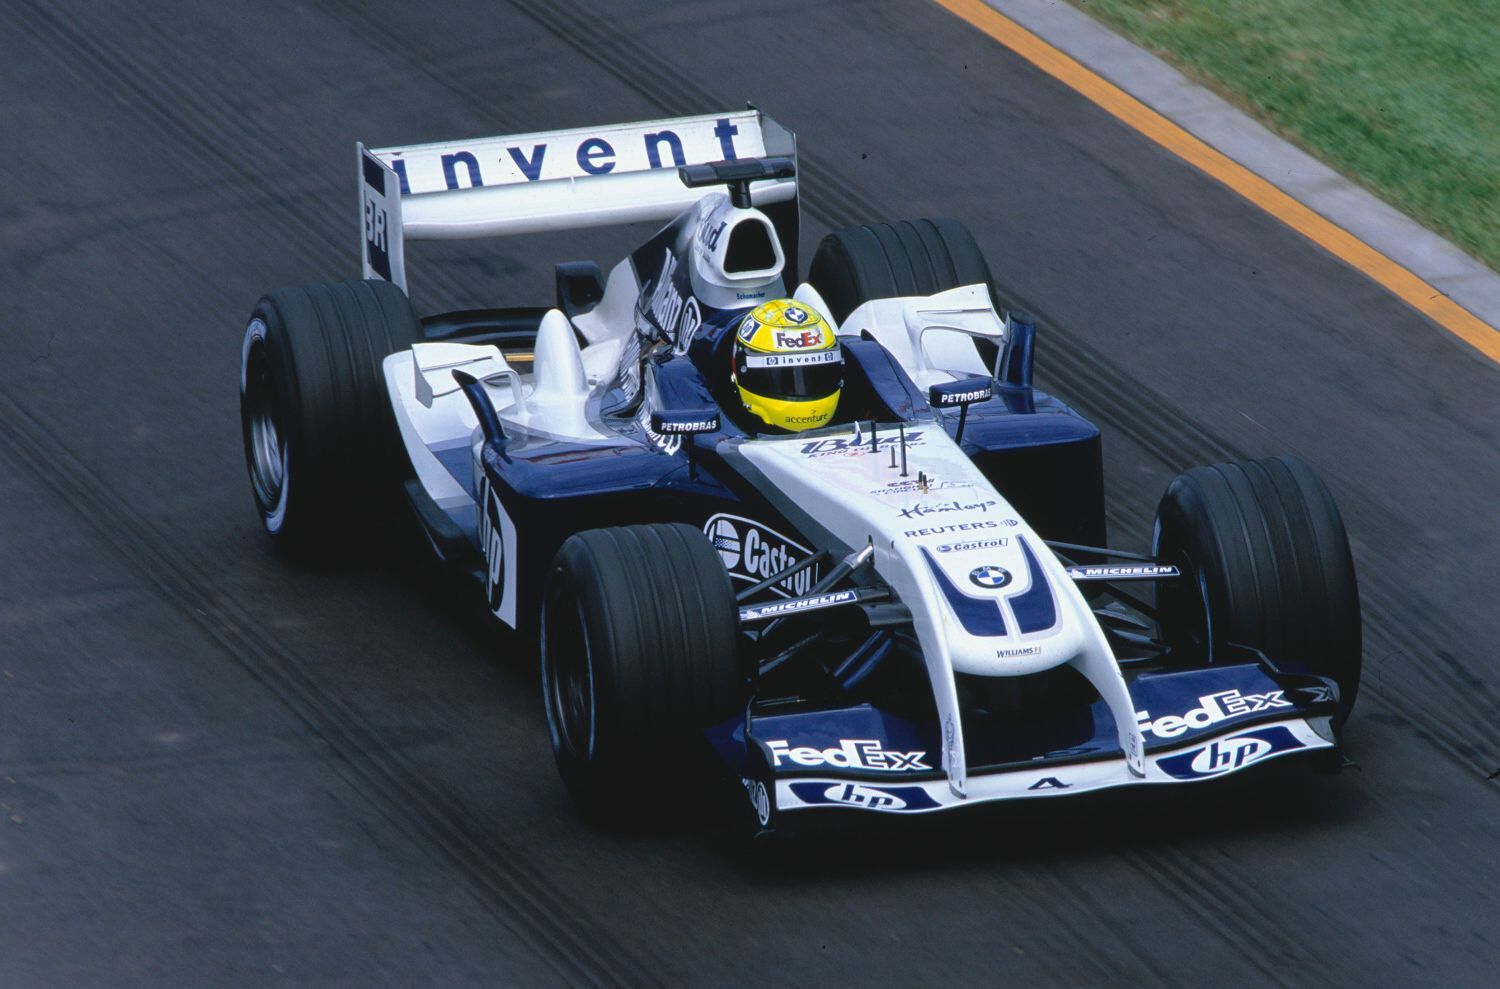 F1, Williams FW26 2004: Ralf Schuamcher